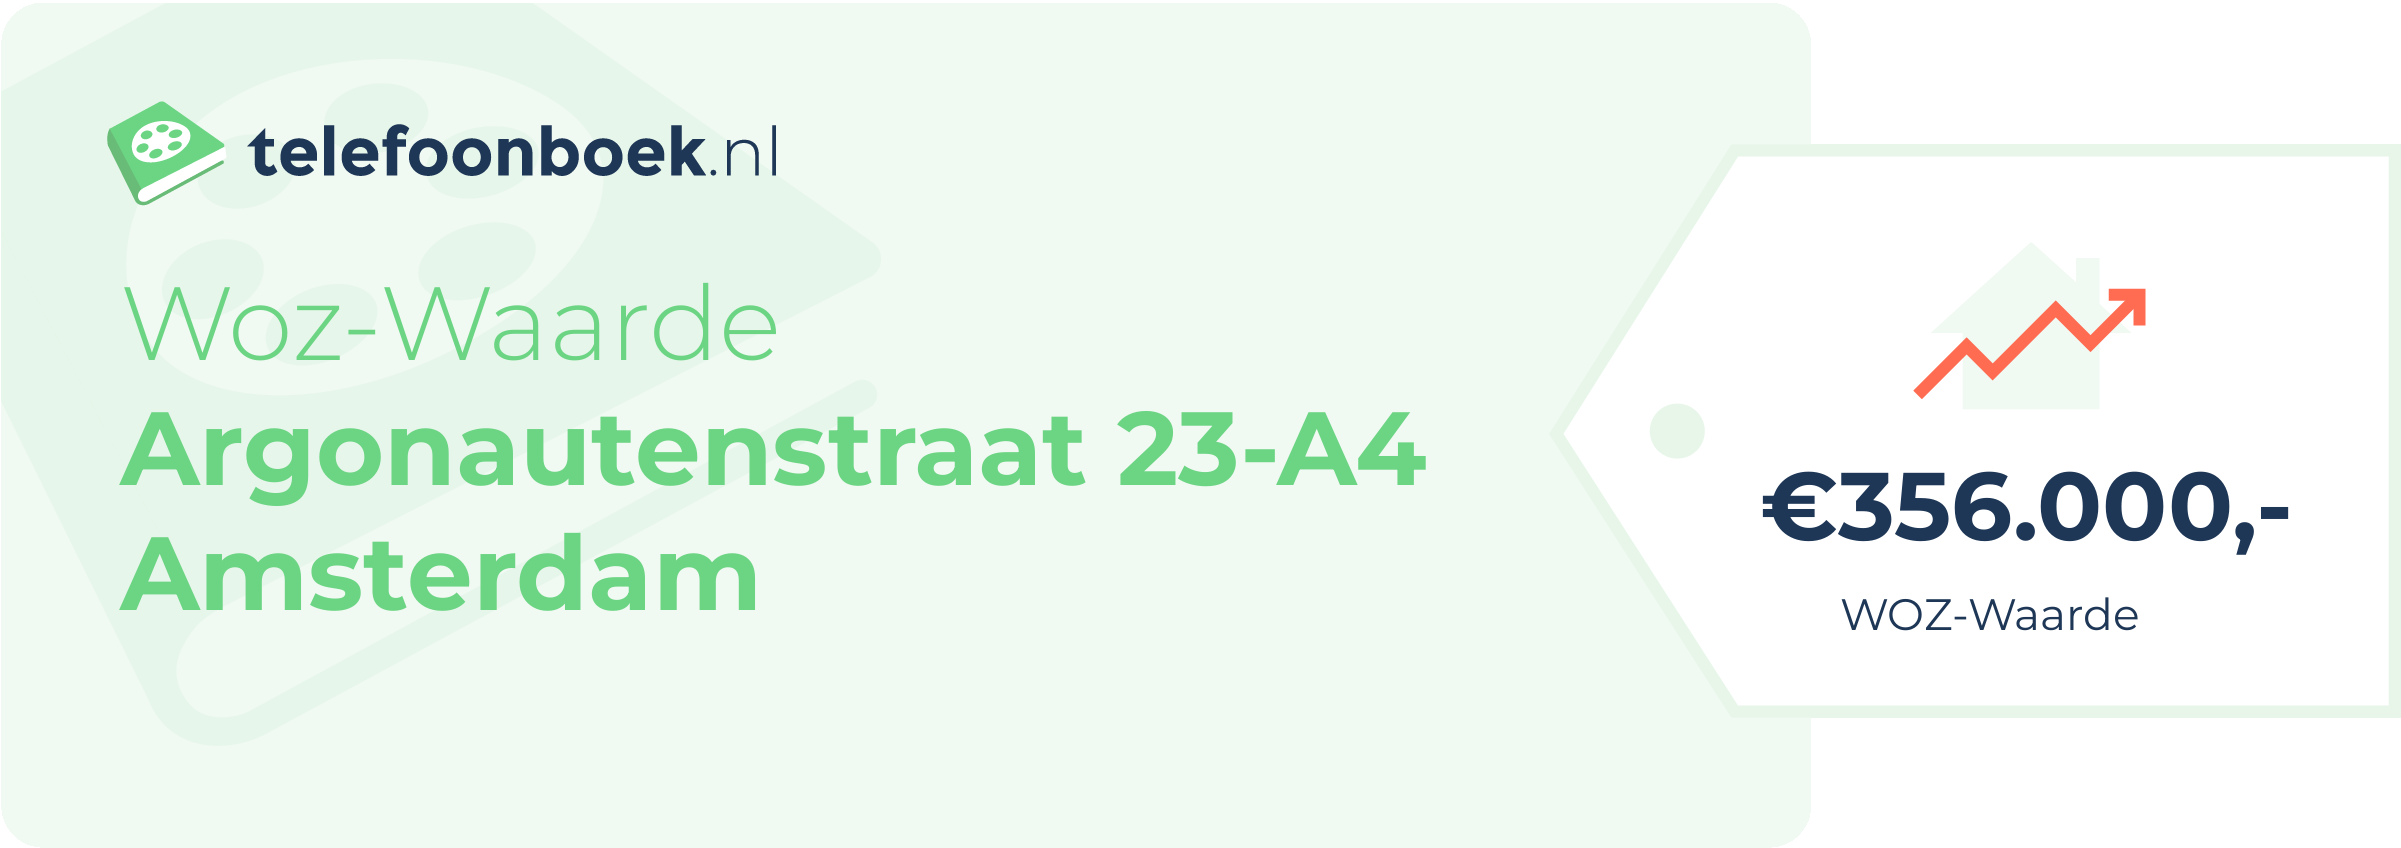 WOZ-waarde Argonautenstraat 23-A4 Amsterdam